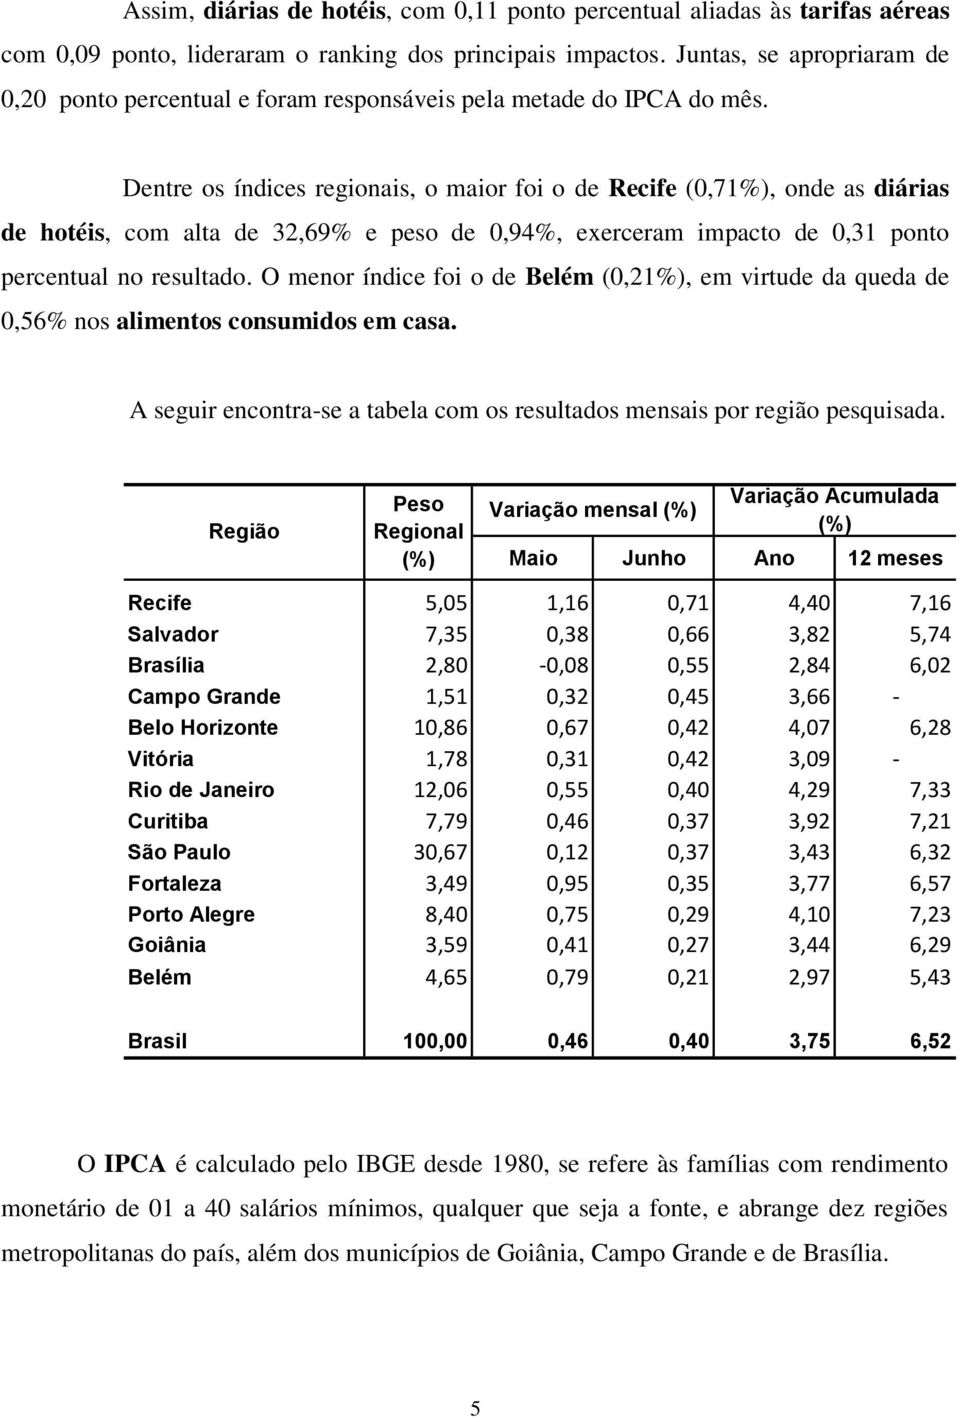 Dentre os índices regionais, o maior foi o de Recife (0,71%), onde as diárias de hotéis, com alta de 32,69% e peso de 0,94%, exerceram impacto de 0,31 ponto percentual no resultado.